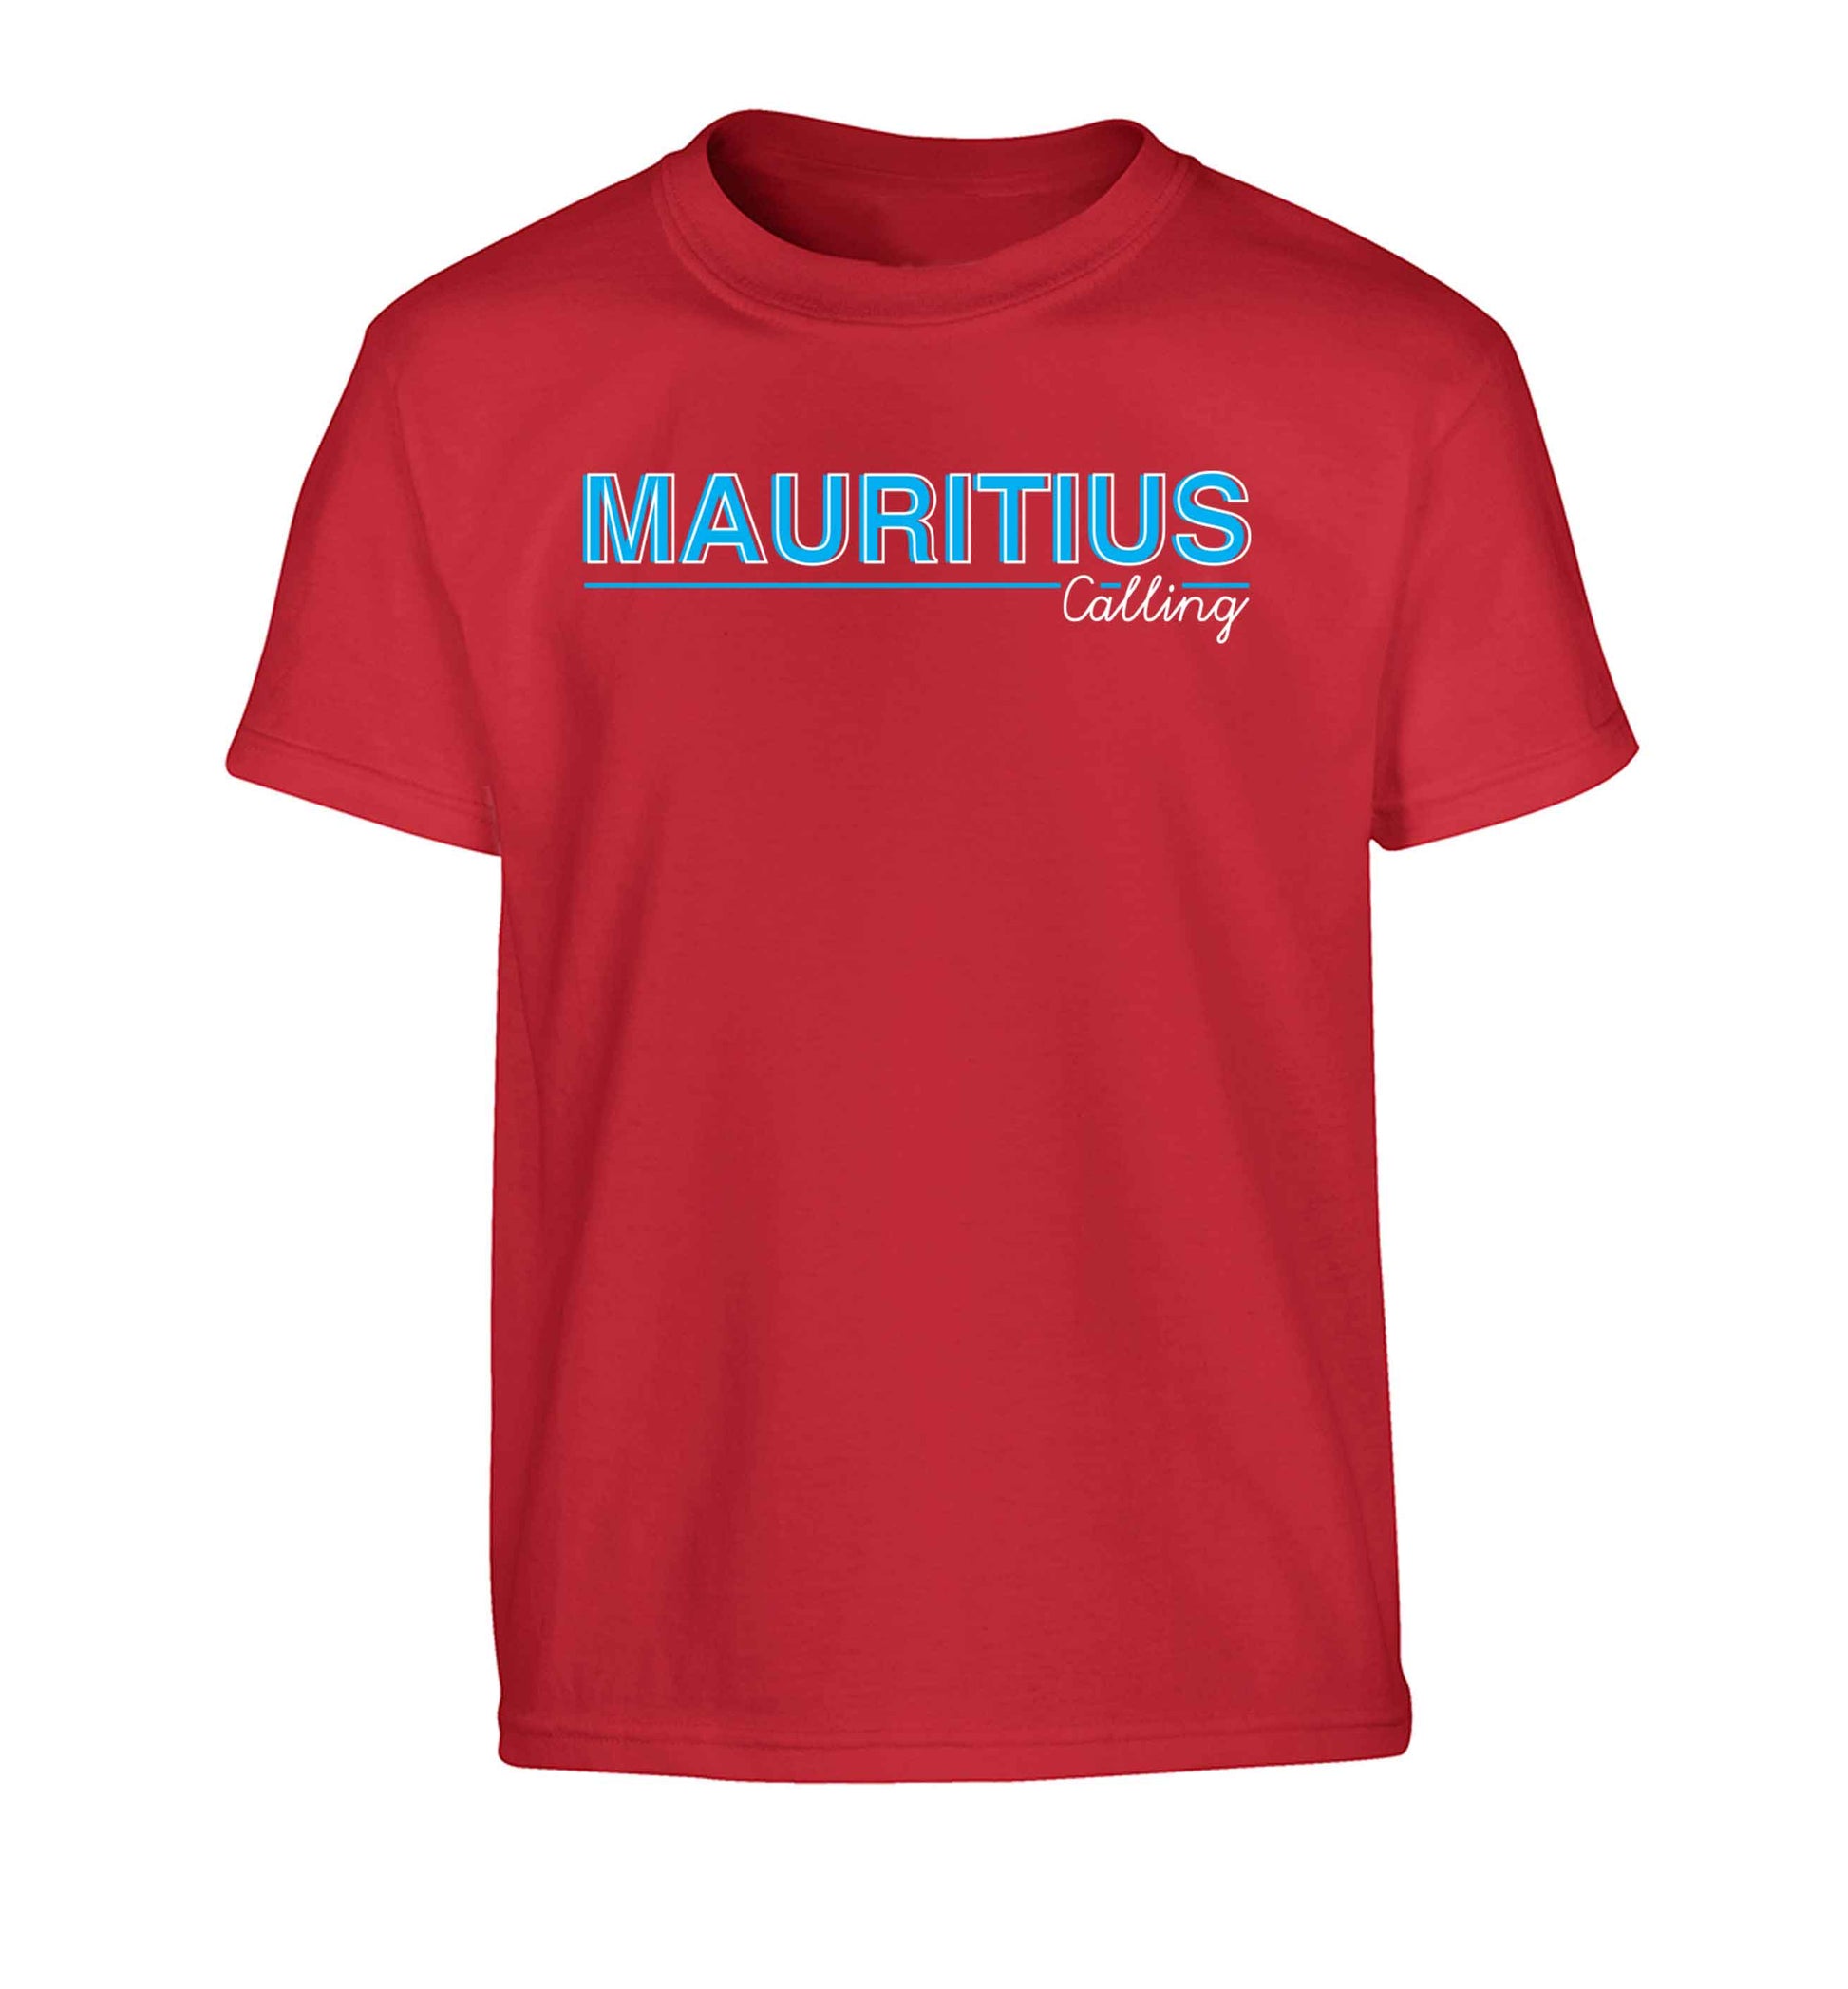 Mauritius calling Children's red Tshirt 12-13 Years